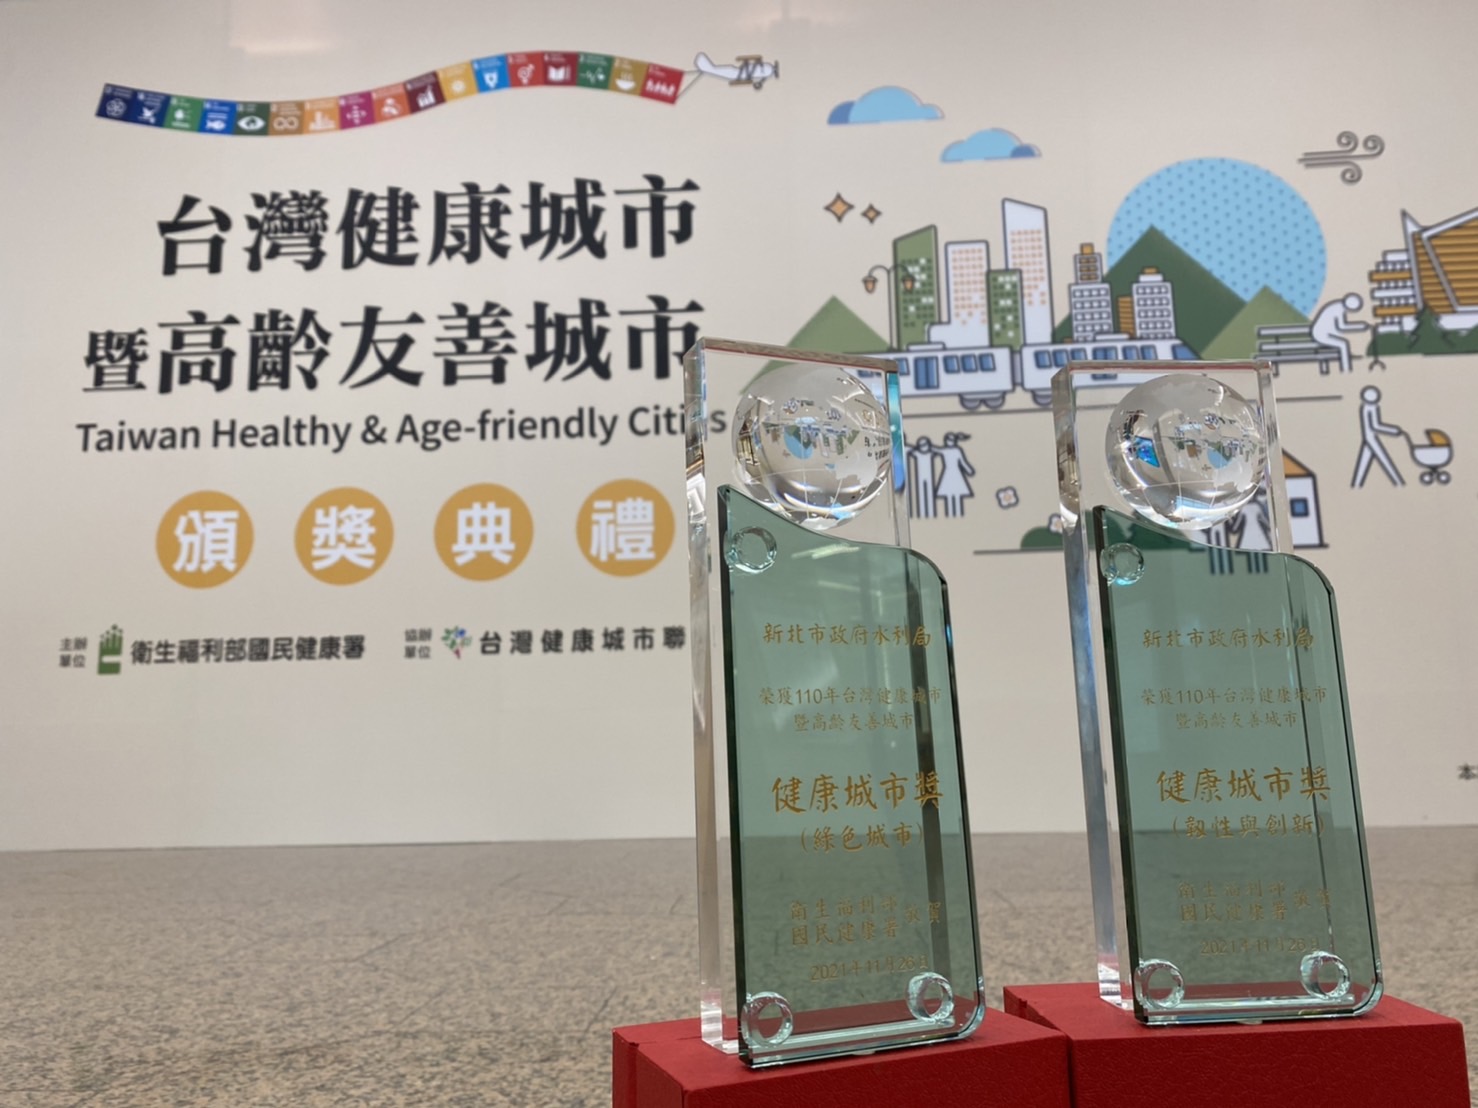 新北市水利局參與「110年台灣健康城市暨高齡友善城市」在「健康城市獎」類別榮獲「韌性與創新獎」及「綠色城市獎」